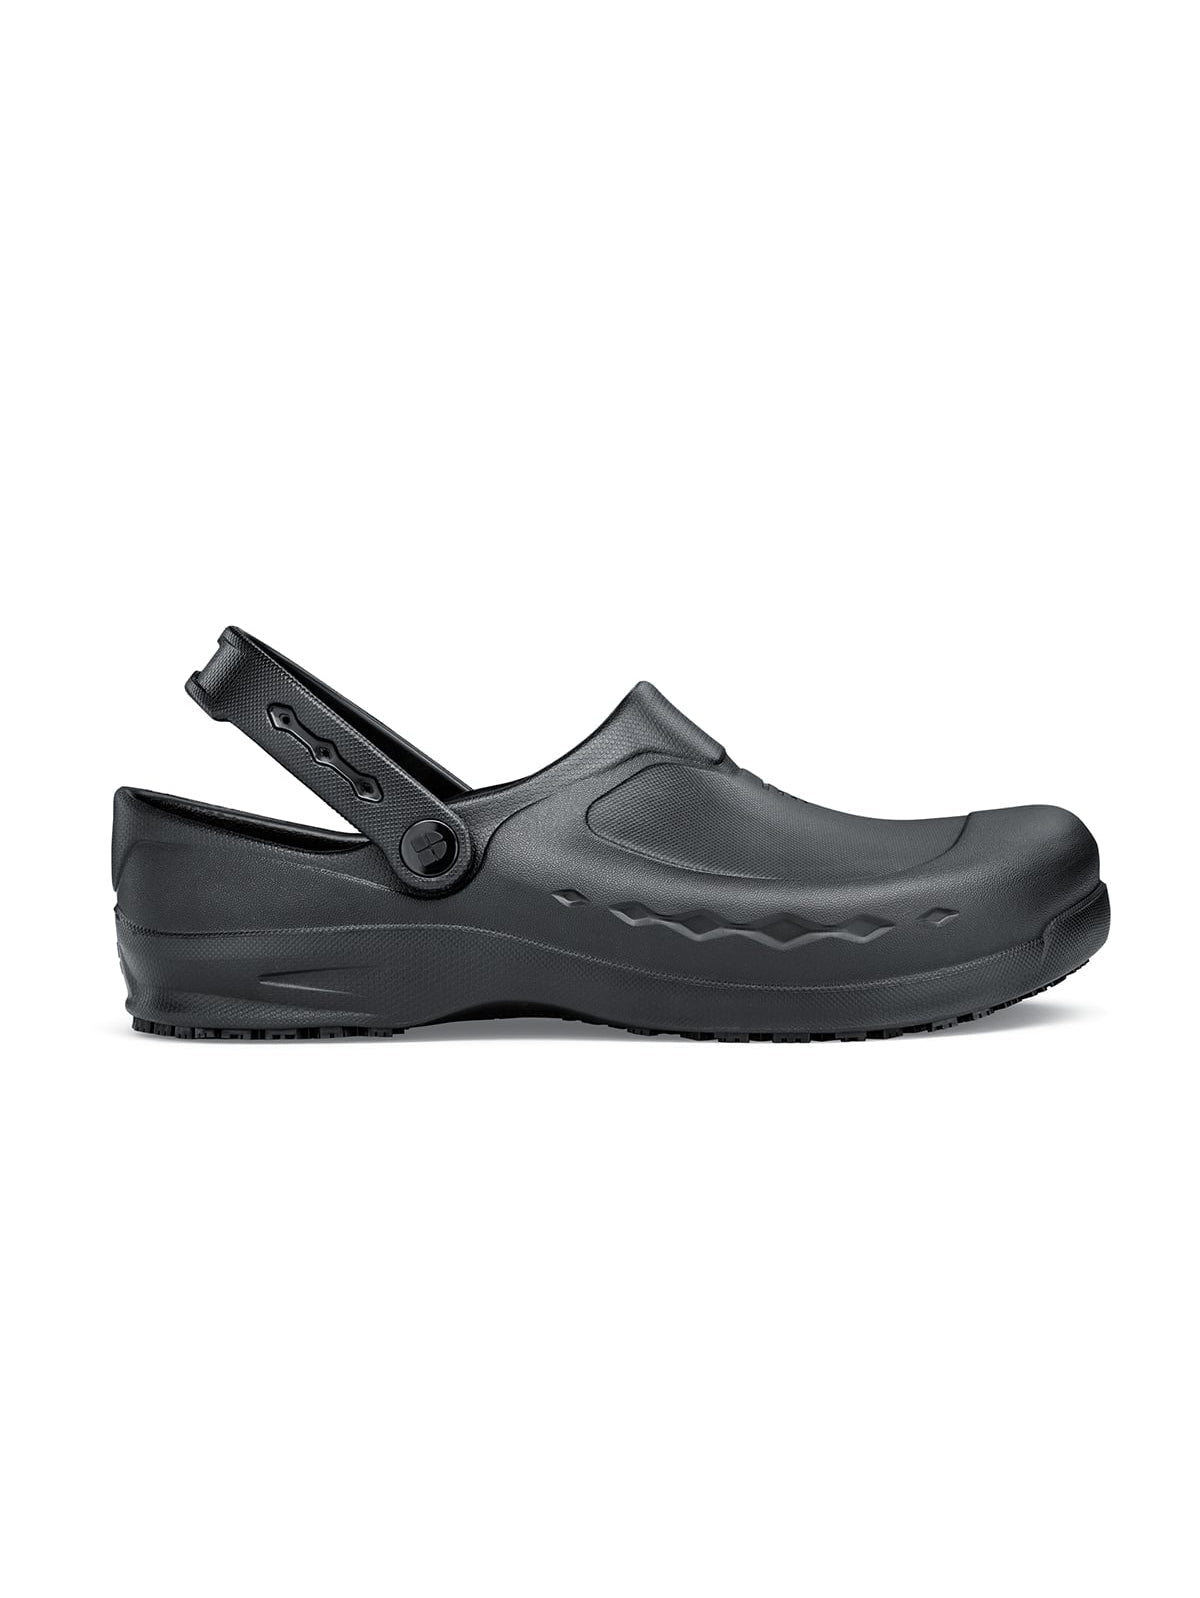 Unisex Work Shoe Zinc Black by Shoes For Crews